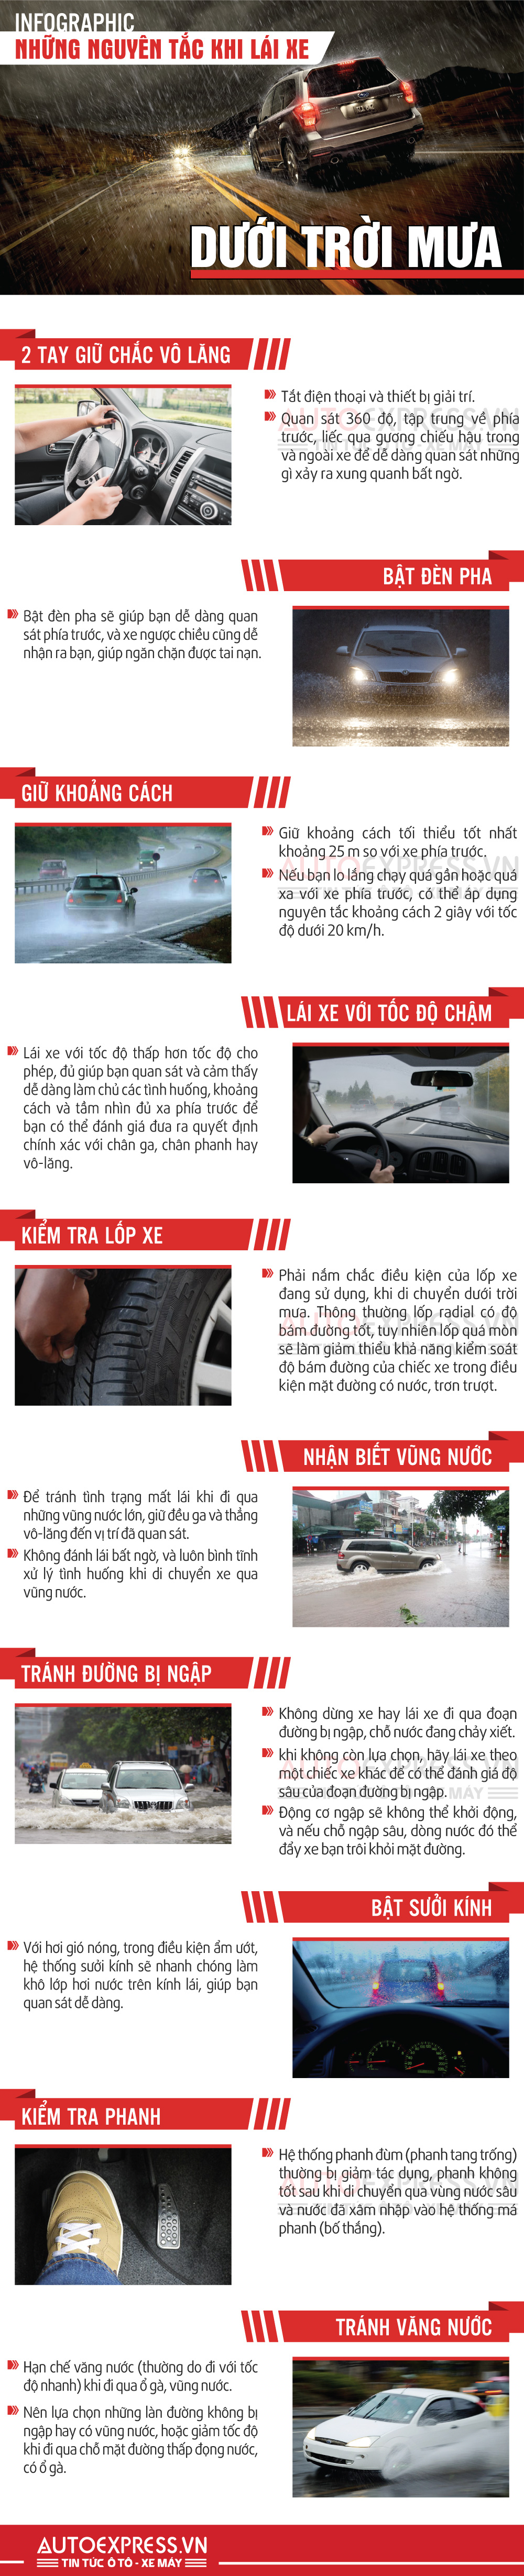 Những nguyên tắc lái xe ô tô dưới trời mưa Infographic